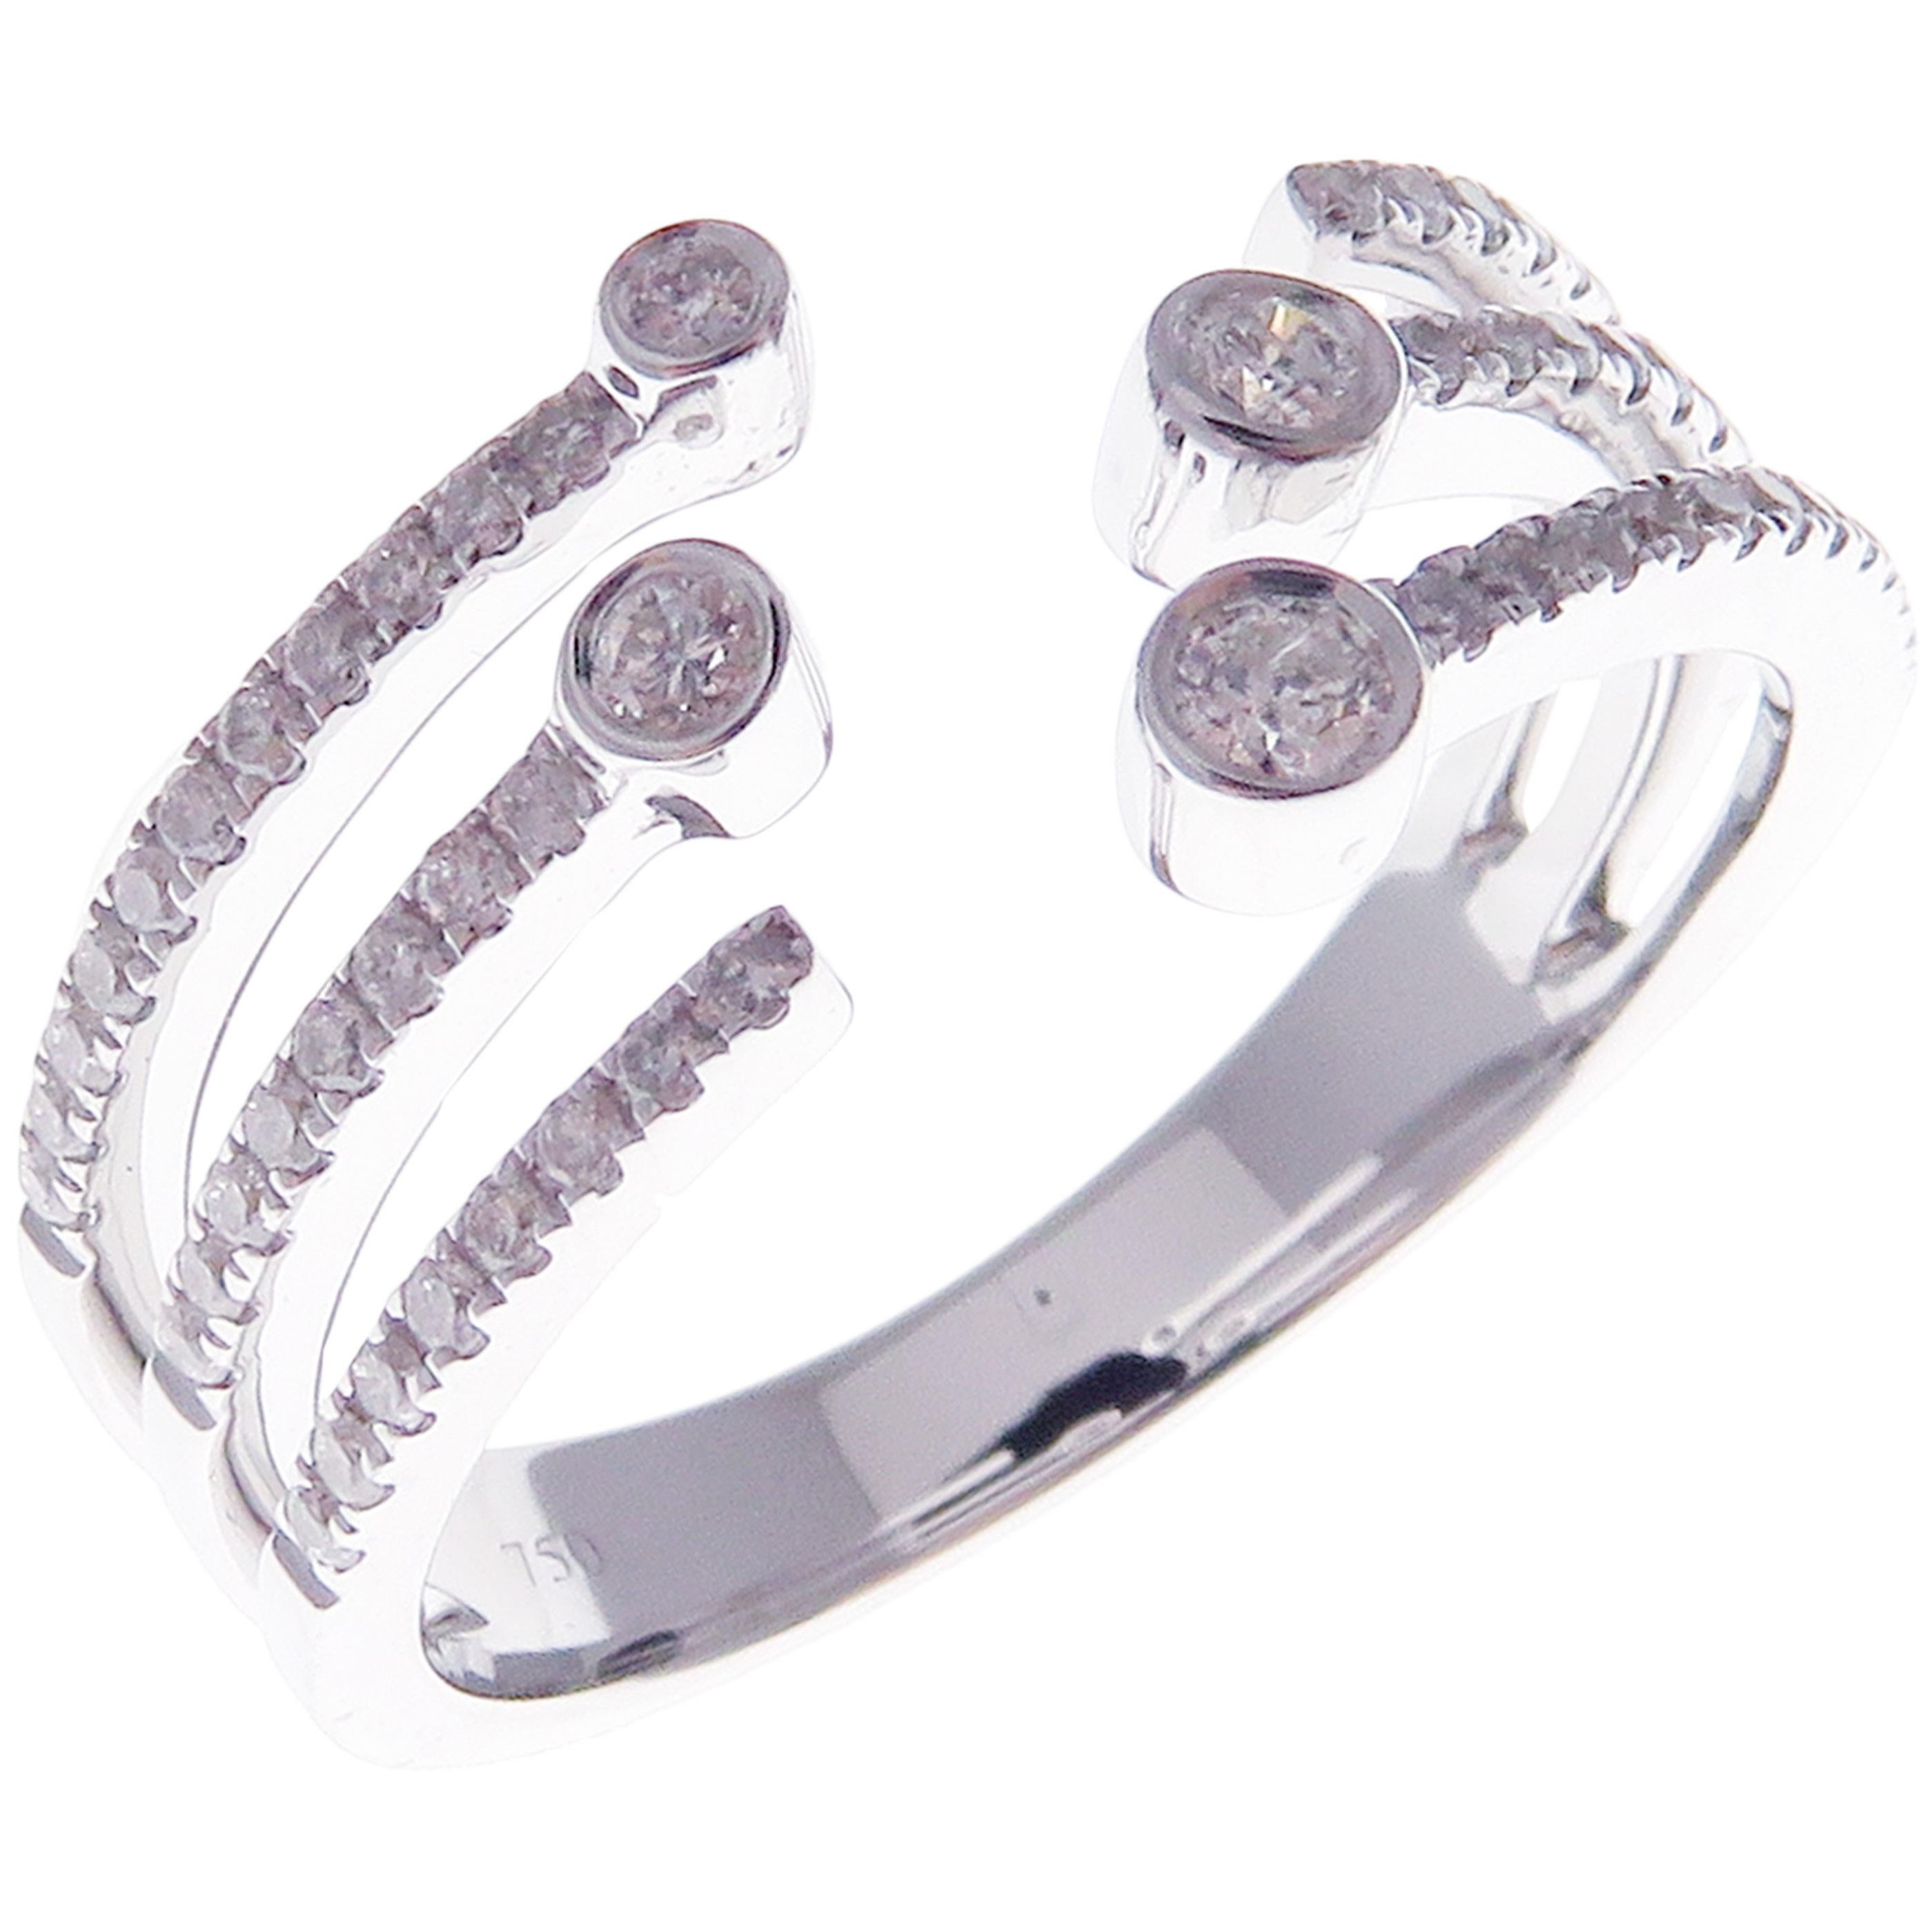 Dieser trendige, mehrlagige, offene Ring ist aus 18 Karat Weißgold gefertigt und mit 57 runden weißen Diamanten von insgesamt 0,34 Karat besetzt.
Ungefähres Gesamtgewicht 4,41 Gramm.
Standard Ringgröße 7
SI-G Qualität natürliche weiße Diamanten.